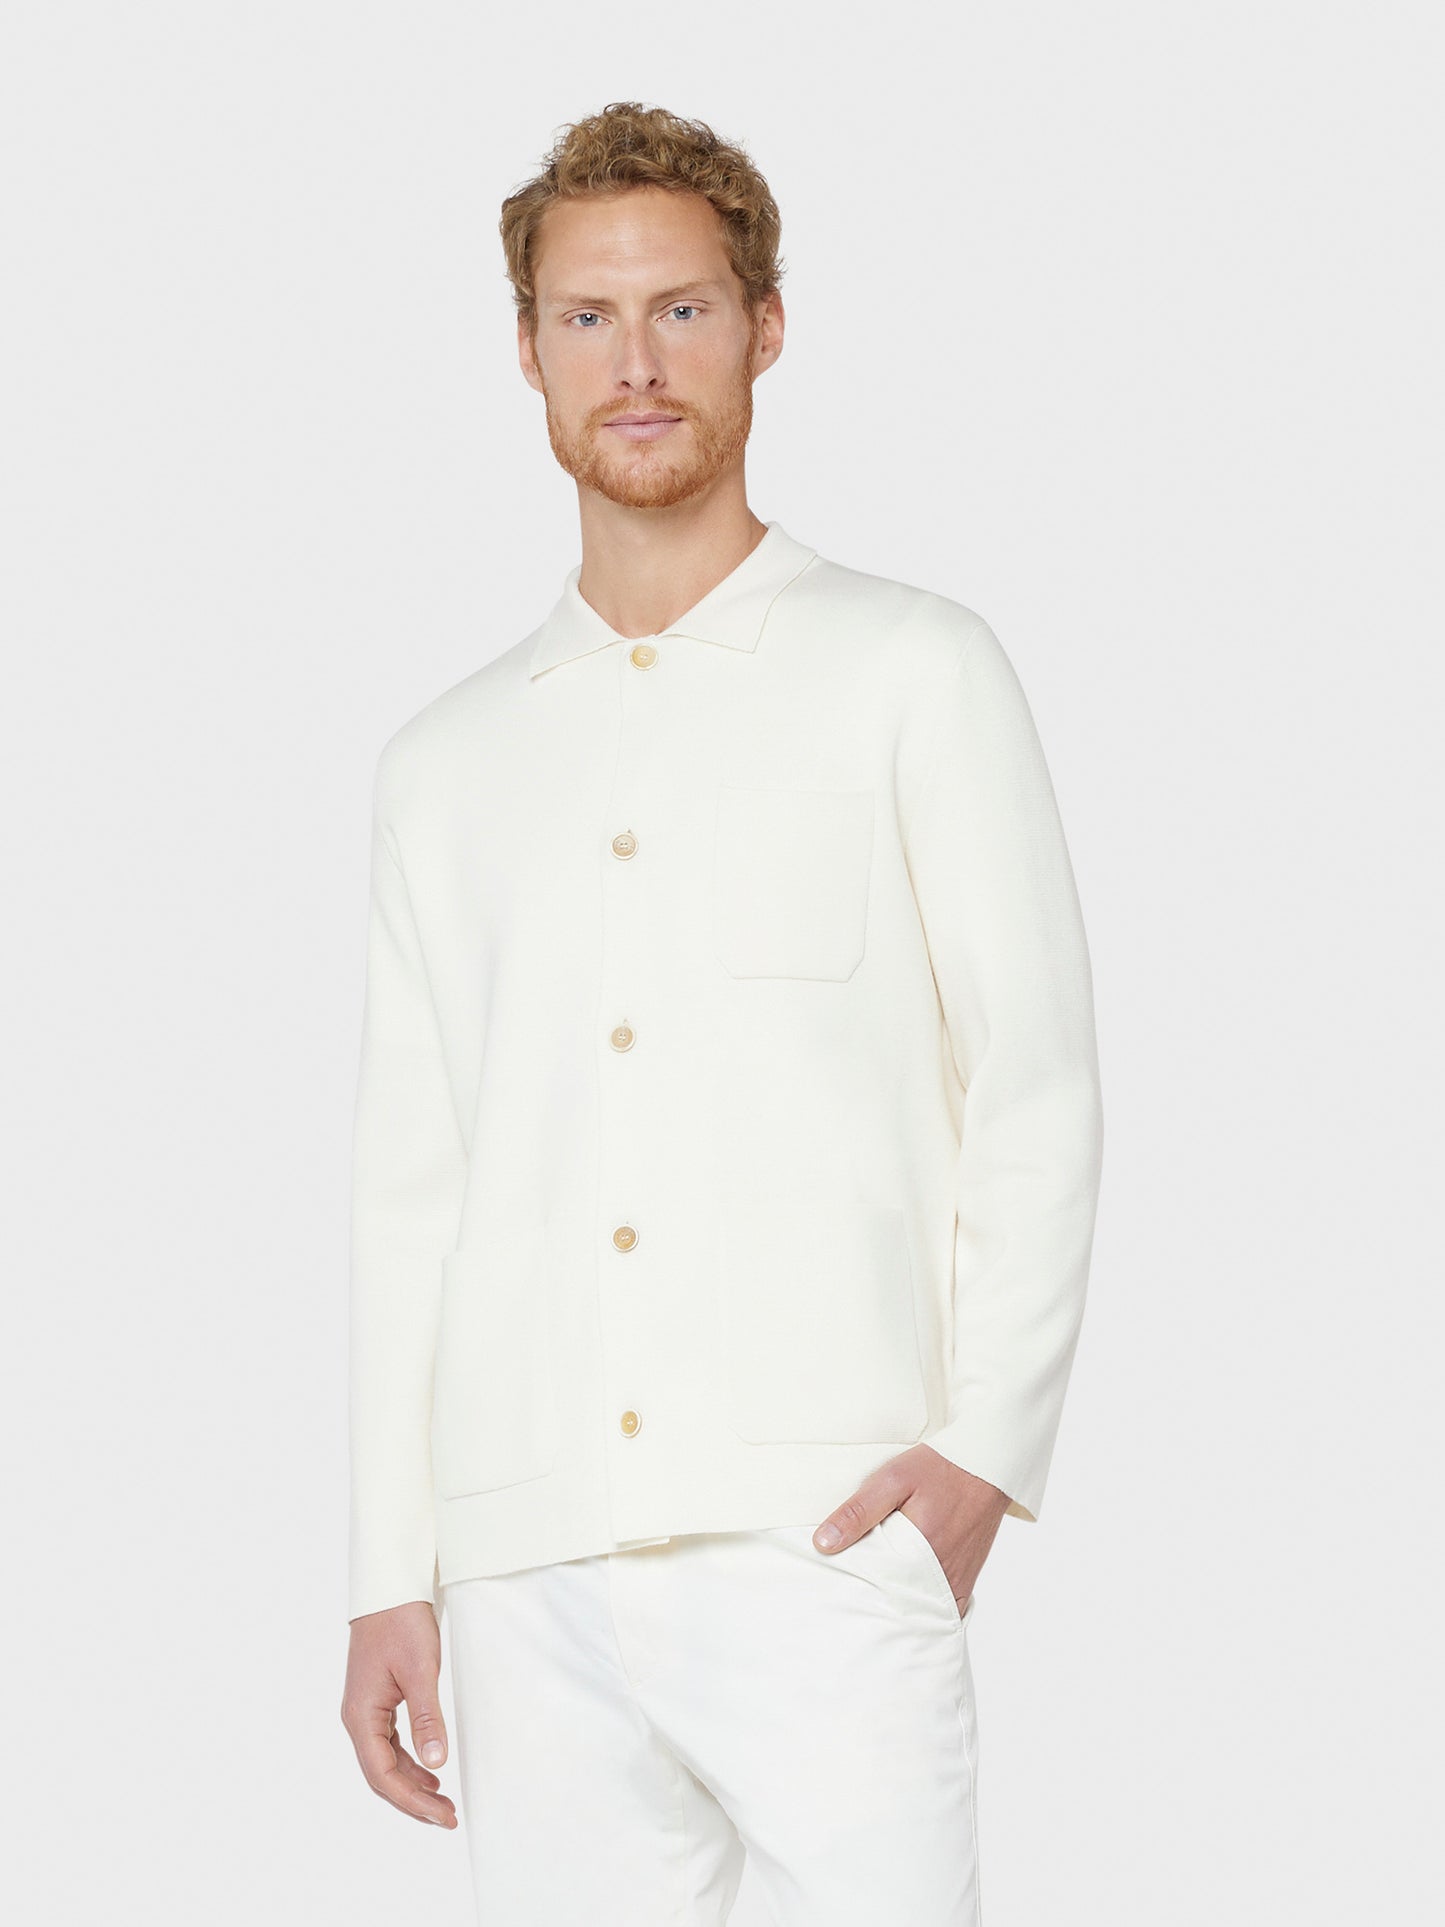 Caruso Menswear Abbigliamento Maglieria Uomo Giacca monopetto cardigan in maglia punto Milano in lana merino bianca naturale indossato